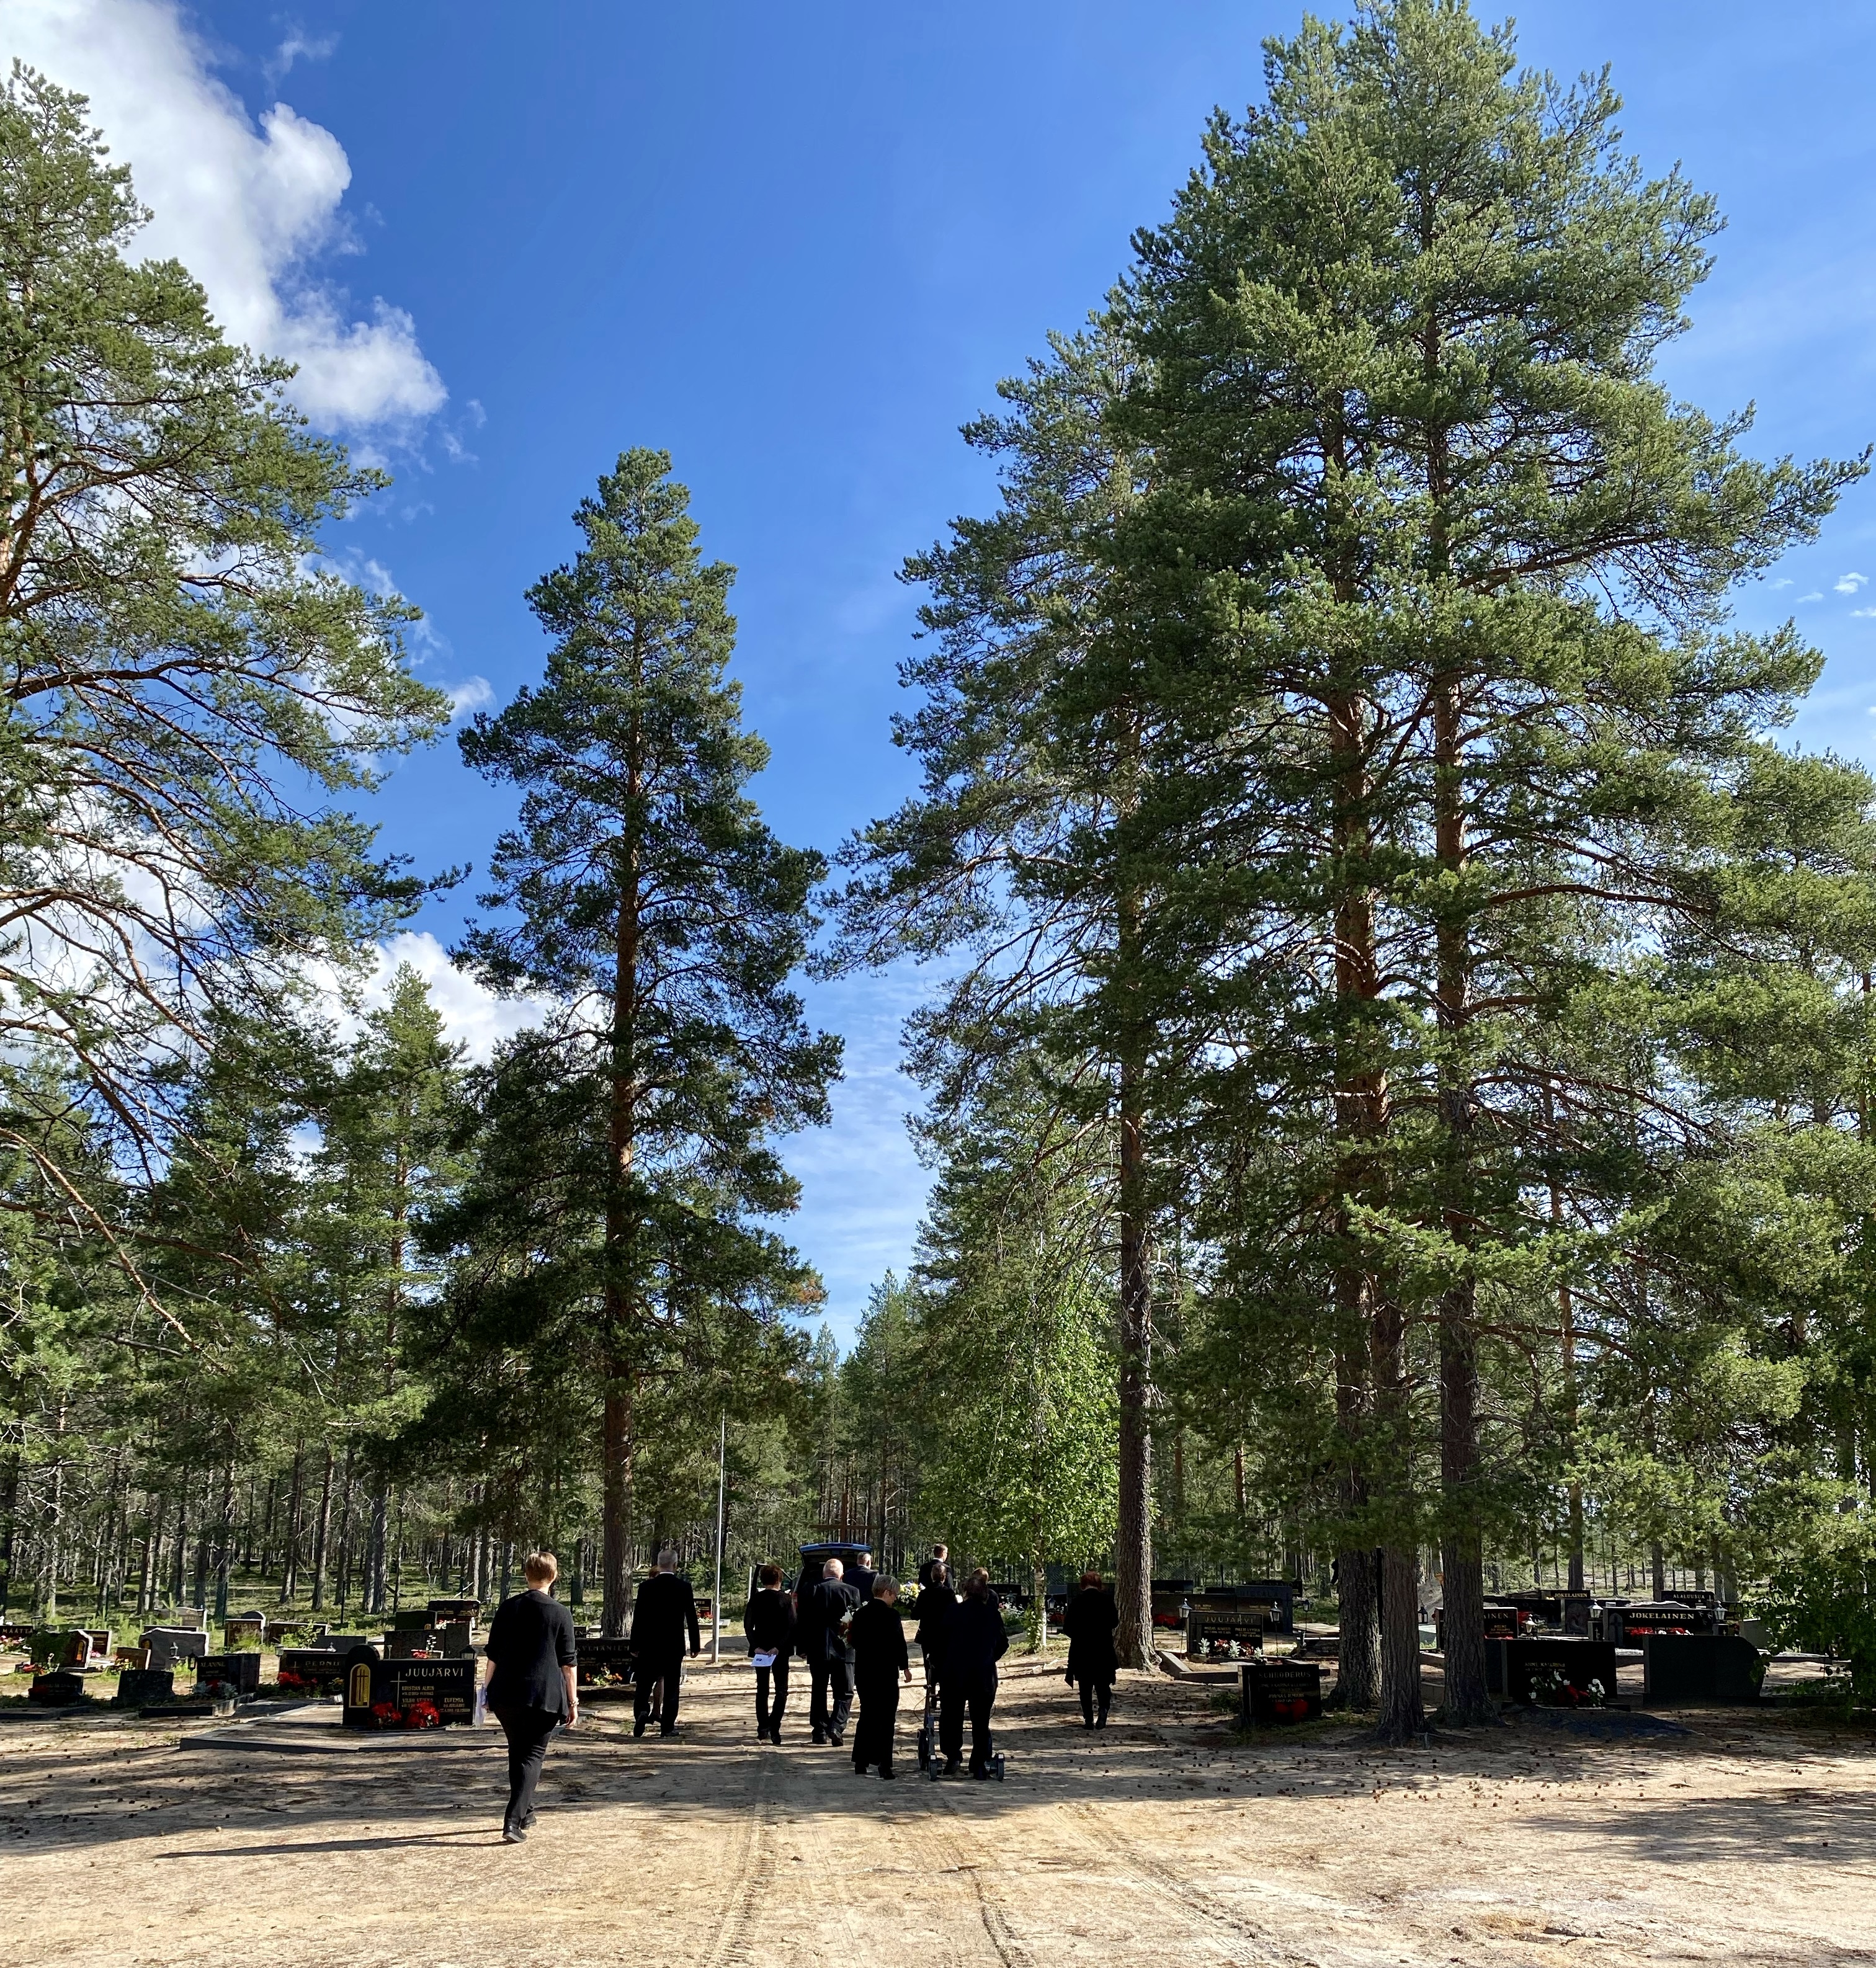 Kuva Juujärven hautausmaalta, joka on yksi pienimmistä, mutta yksi kauneimmista hautausmaista. Kuva otettu aurinkoisella säällä kesällä, kuvassa saattoväkeä. Kuva: Pentti Tepsa.